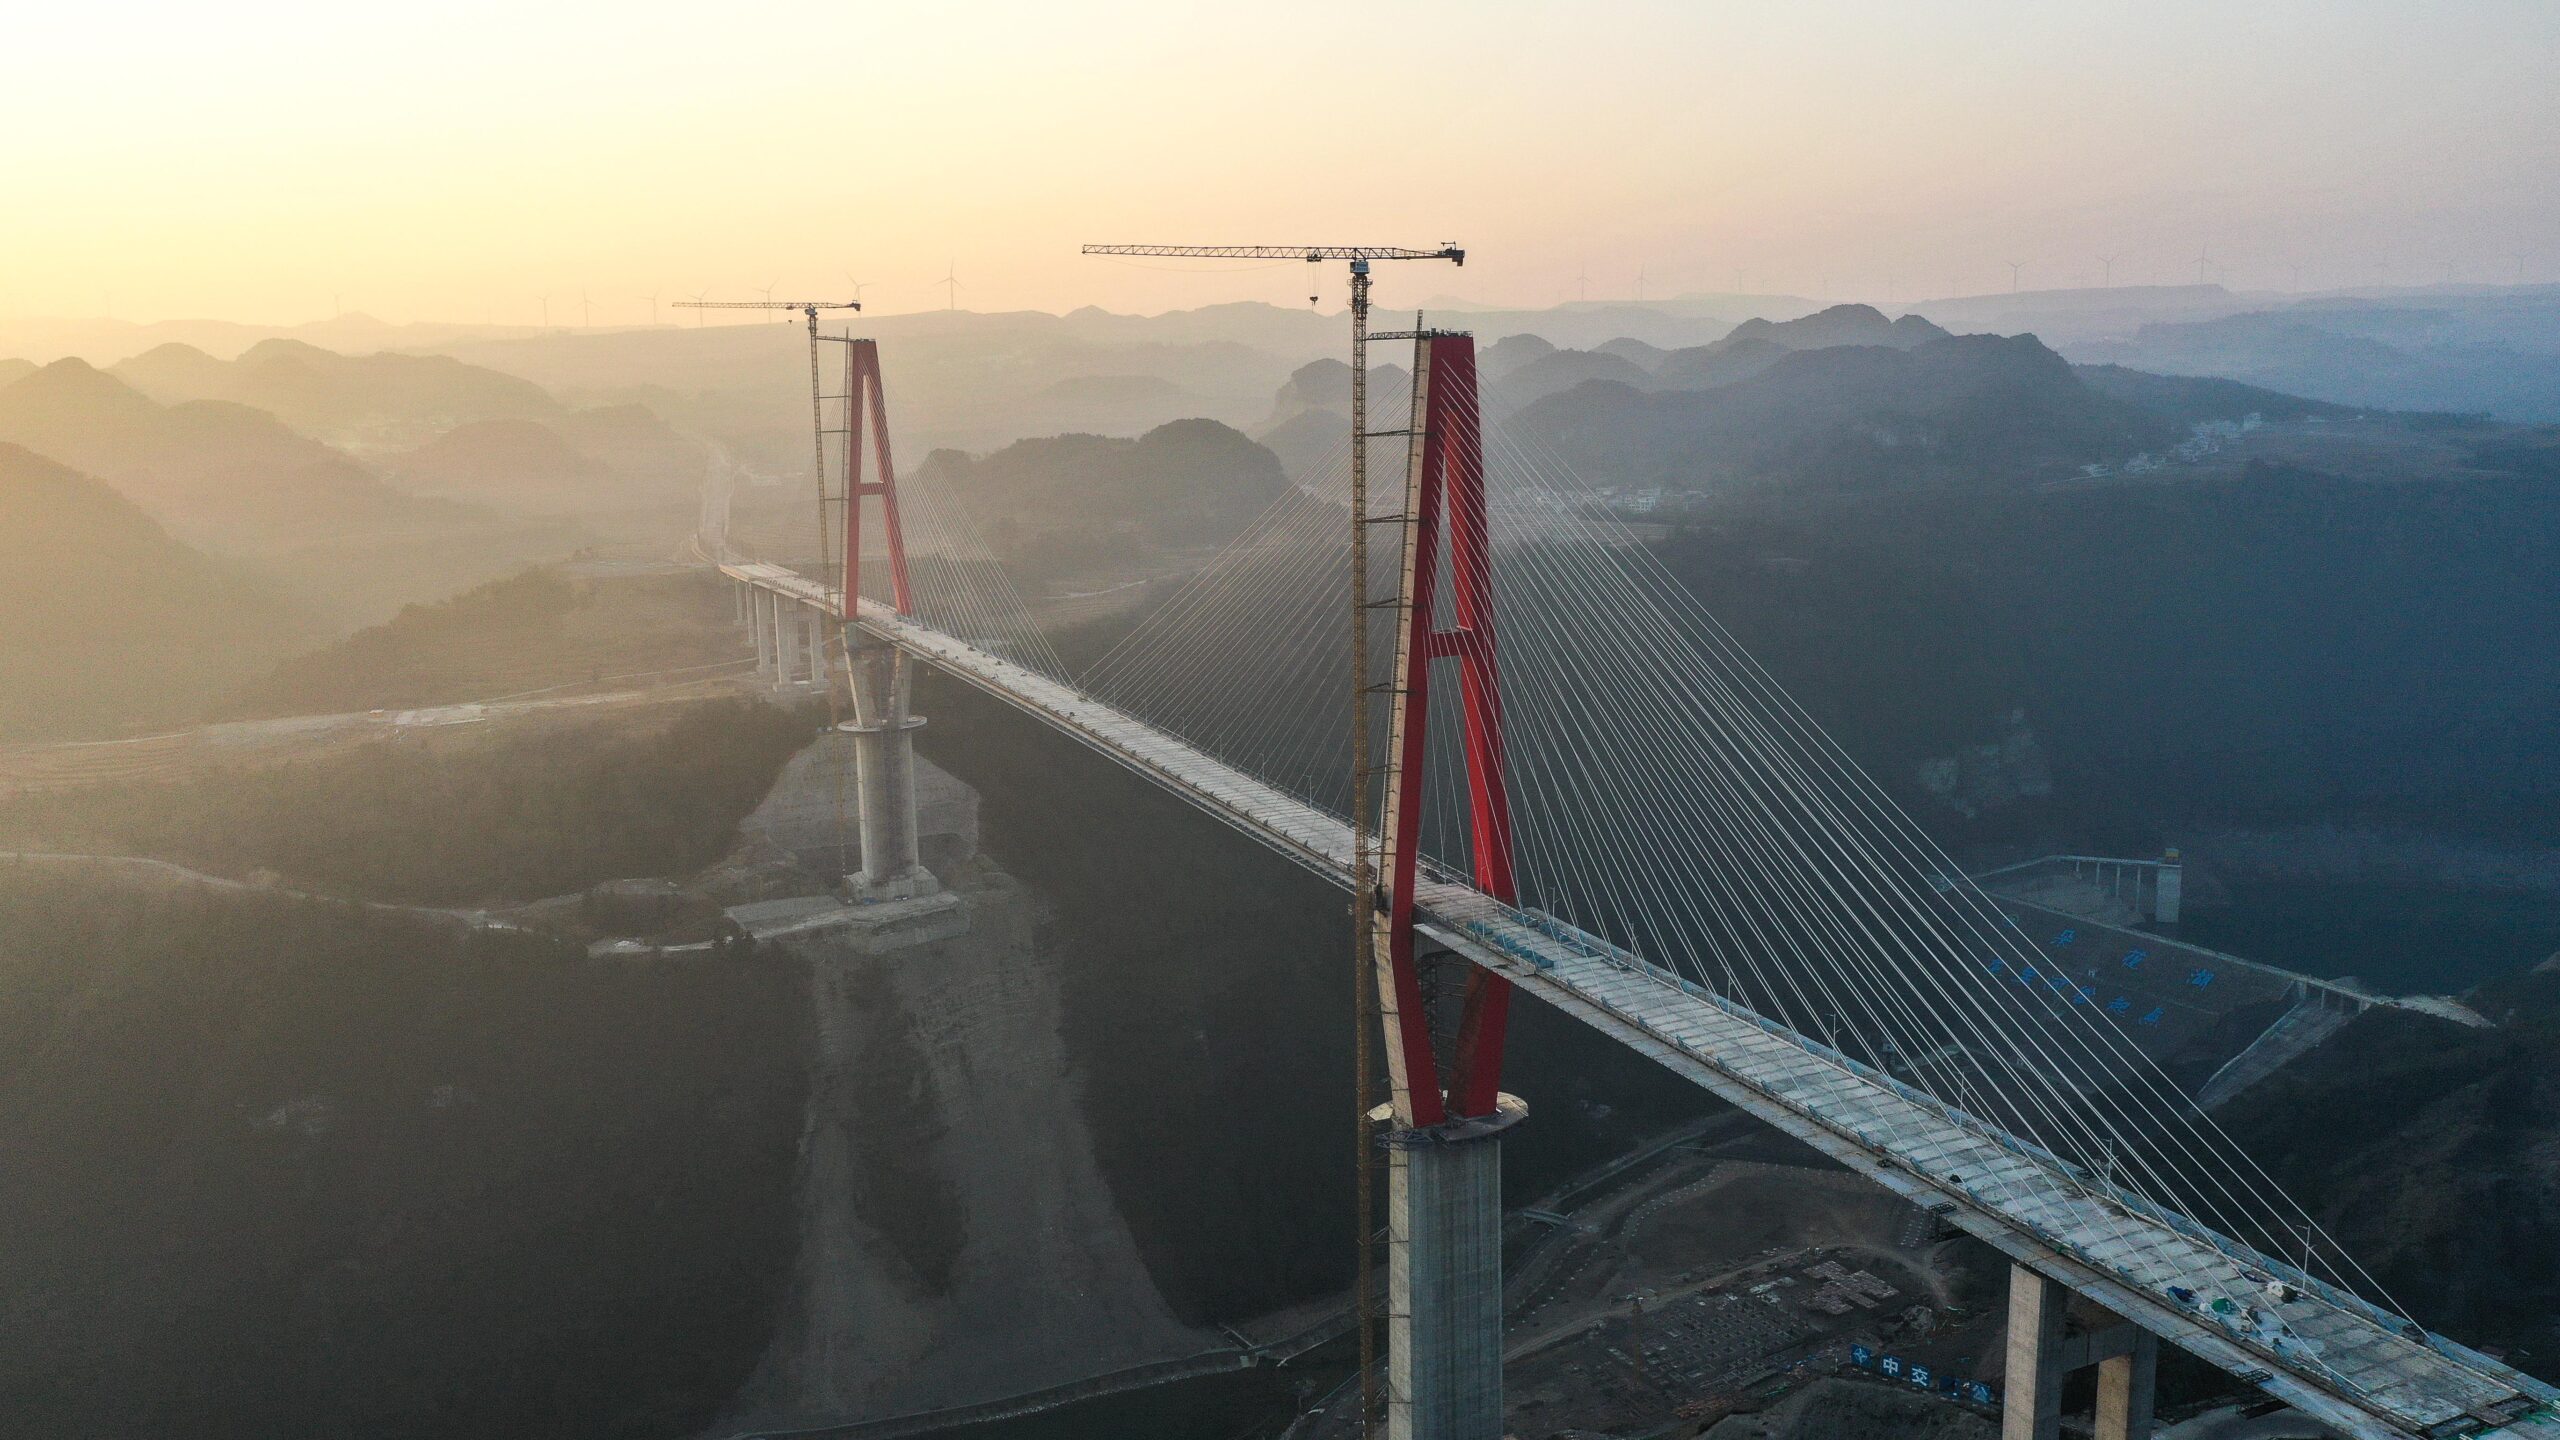 ชมงานสร้าง 'สะพาน' ยาว 1,260 เมตร ผ่าหุบเขาในกุ้ยโจว